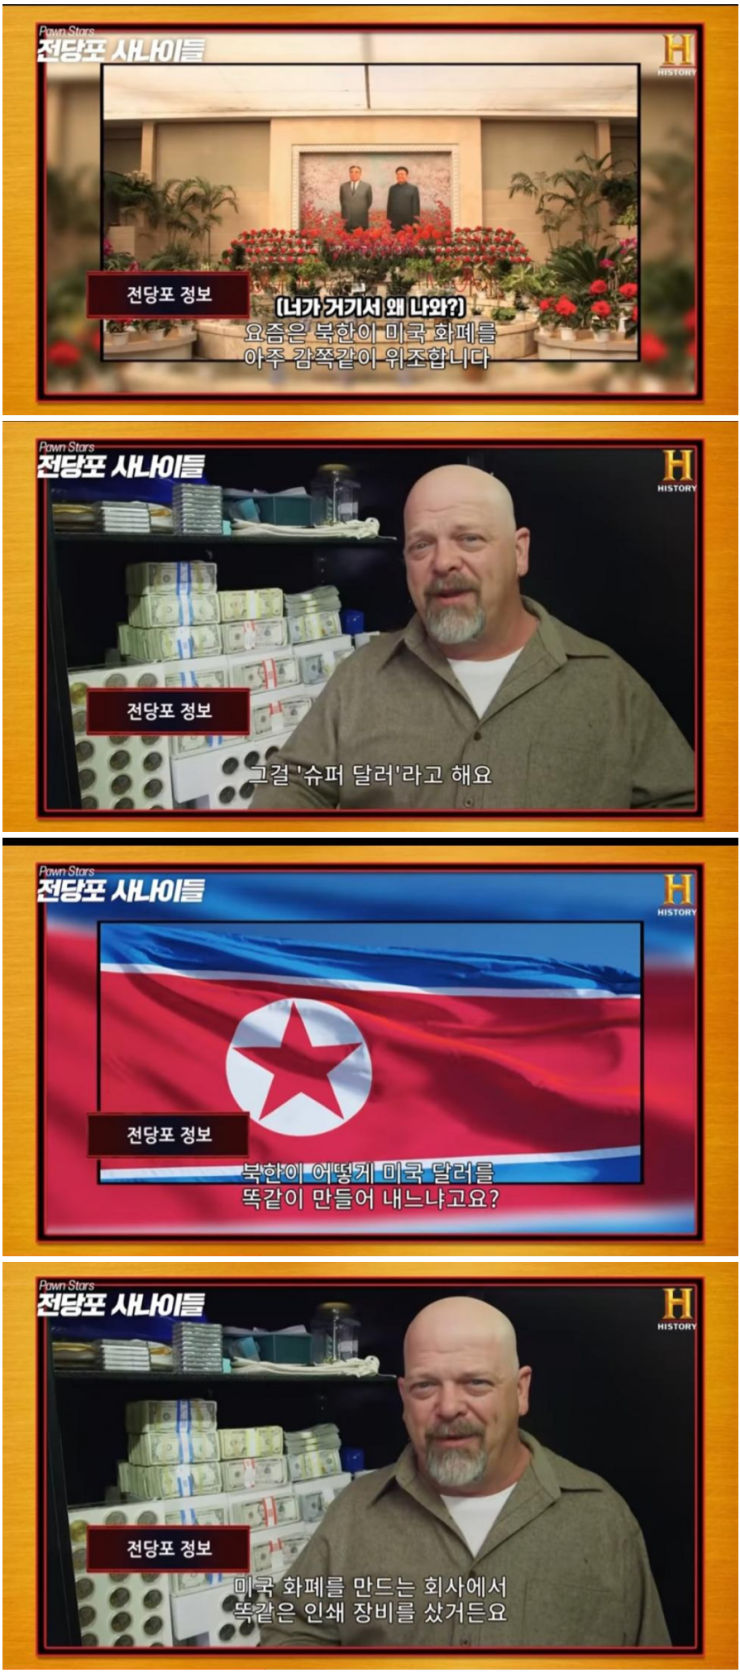 북한의 정교한 달러 위조 기술